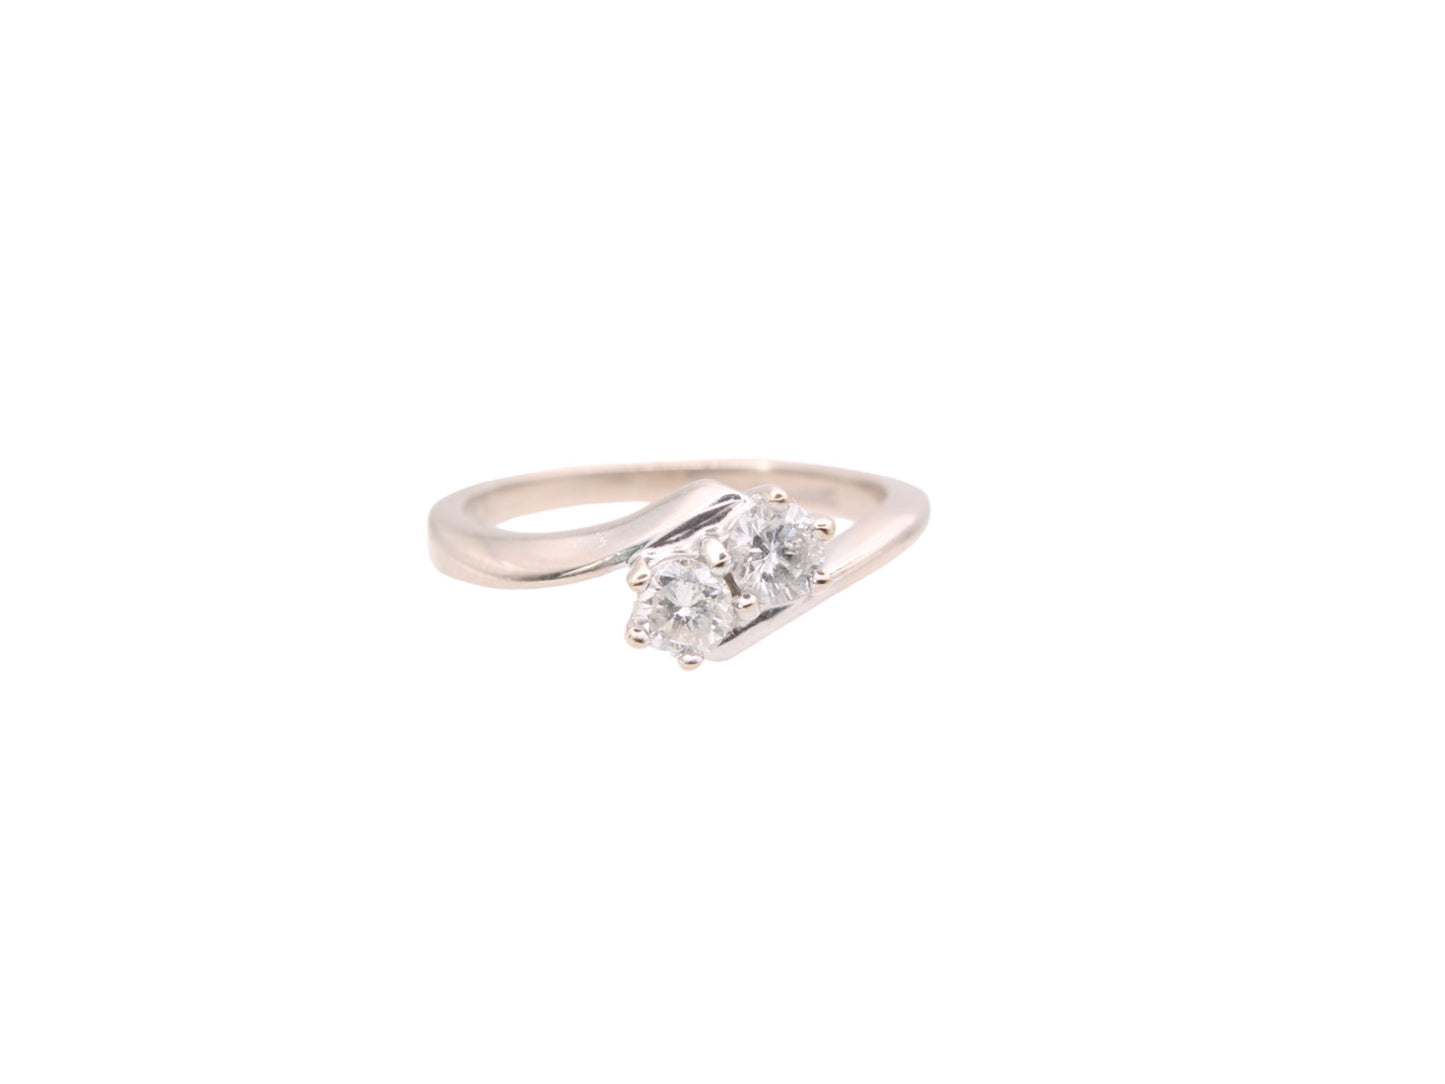 Vintage-18ct-White-Gold-Toi-et-Moi-Diamond-Ring,-.33ct